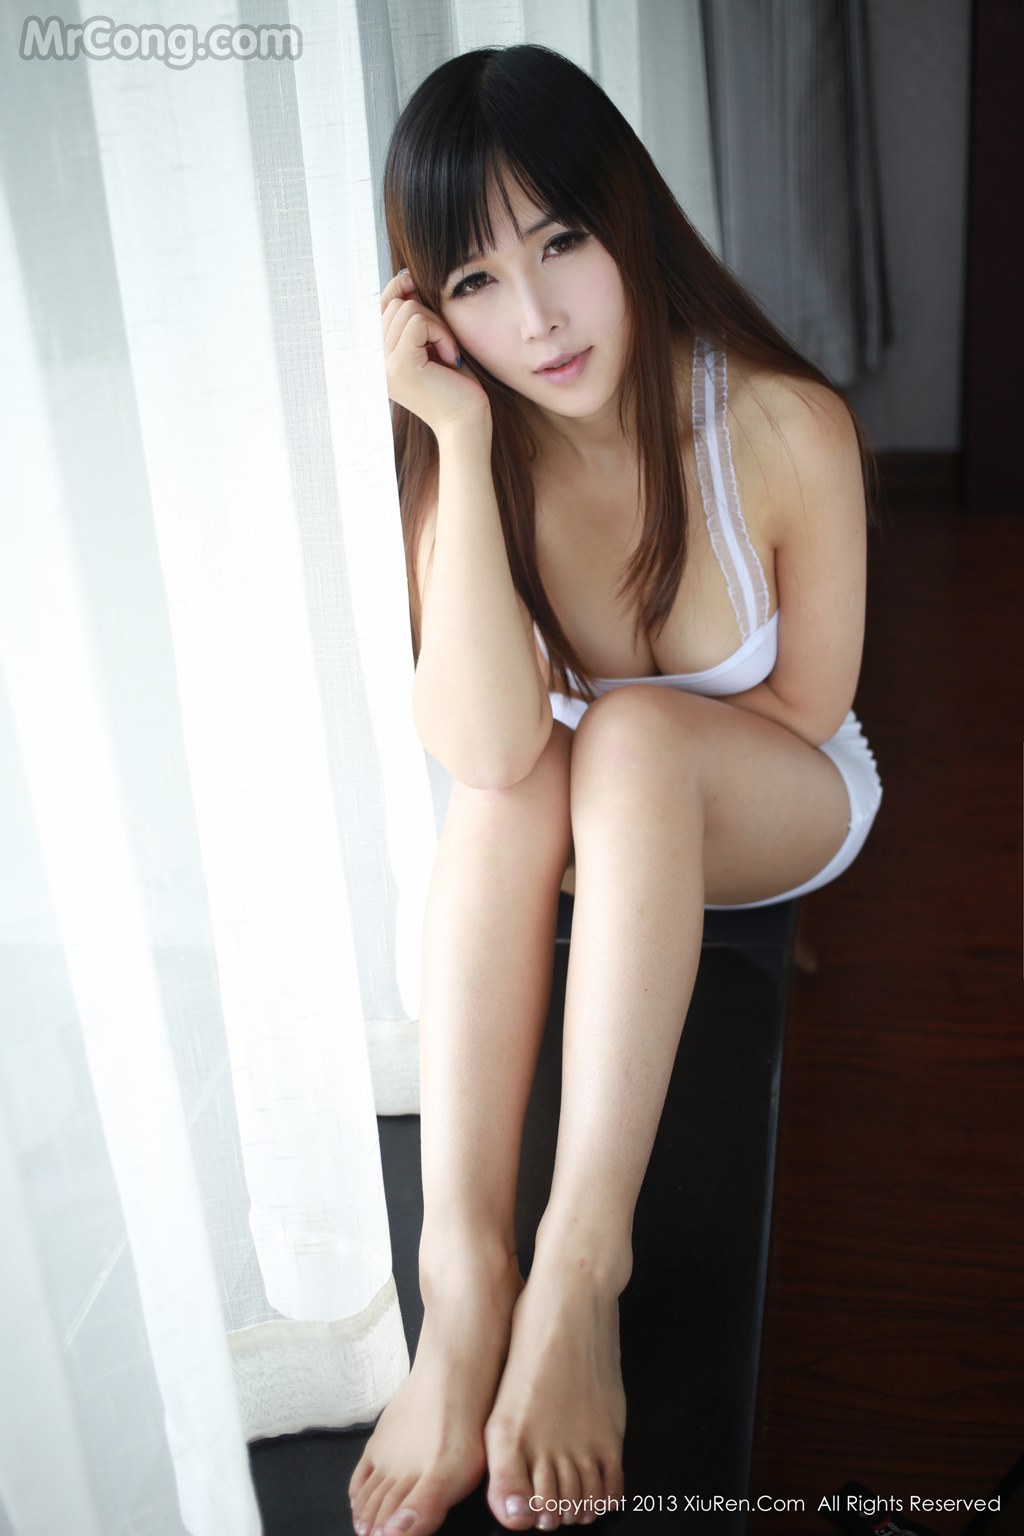 XIUREN No.021: Model Zhang You ayoyo (张 优 ayoyo) (62 pictures) photo 3-2